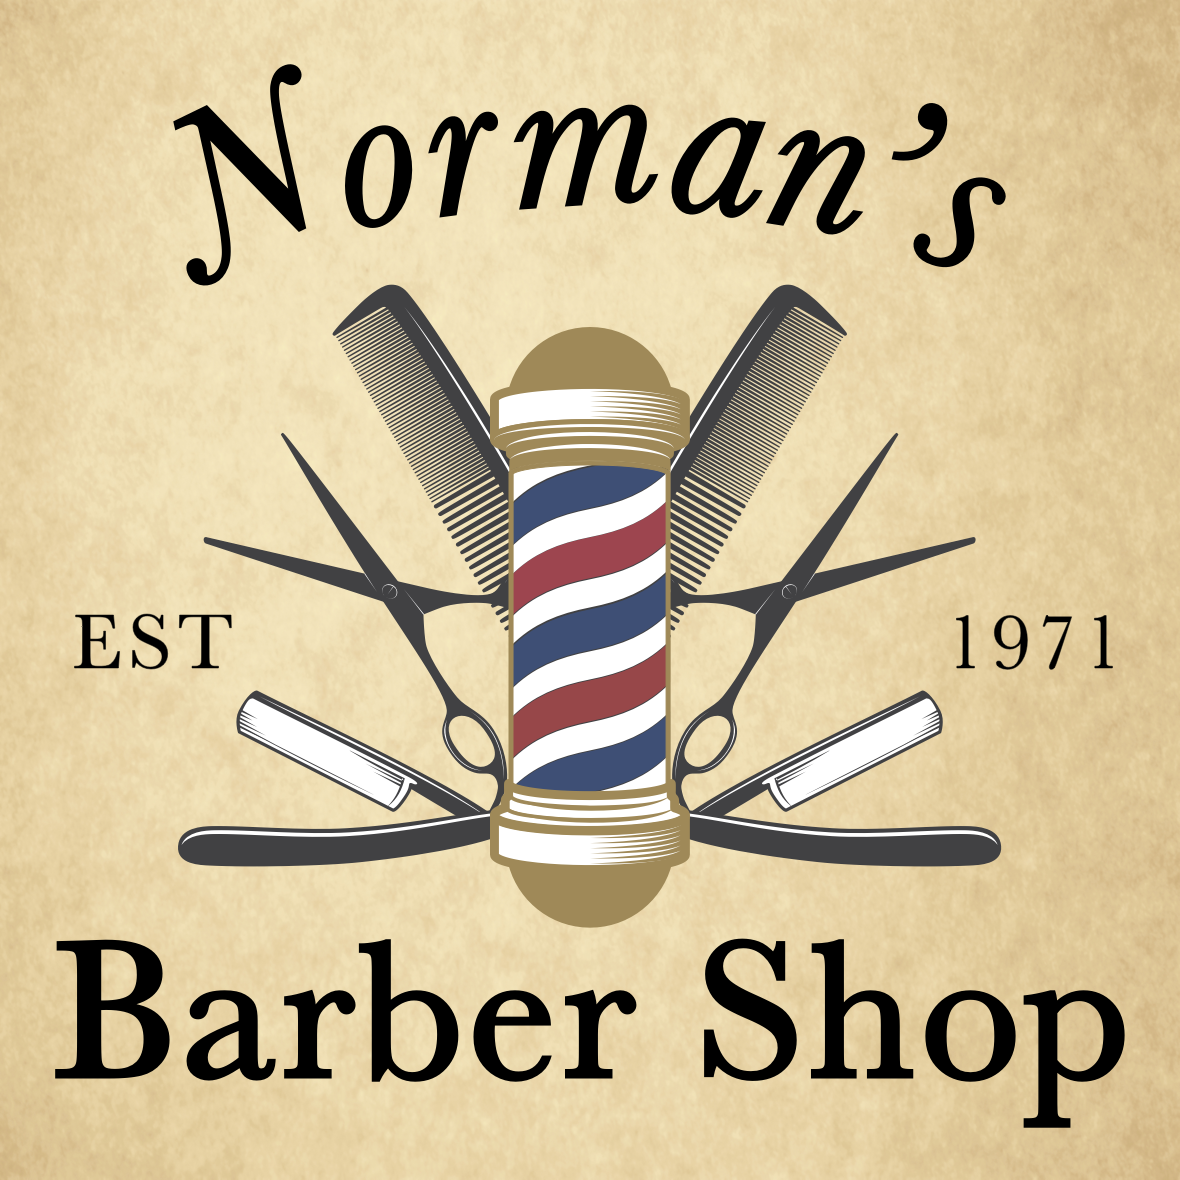 Norman's Barber Shop